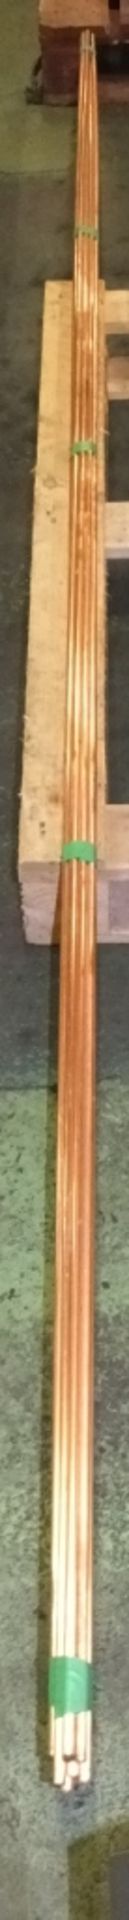 Industrial Copper Pipe - 10x 3/8" x 0.32 x 3M - 5.5kg